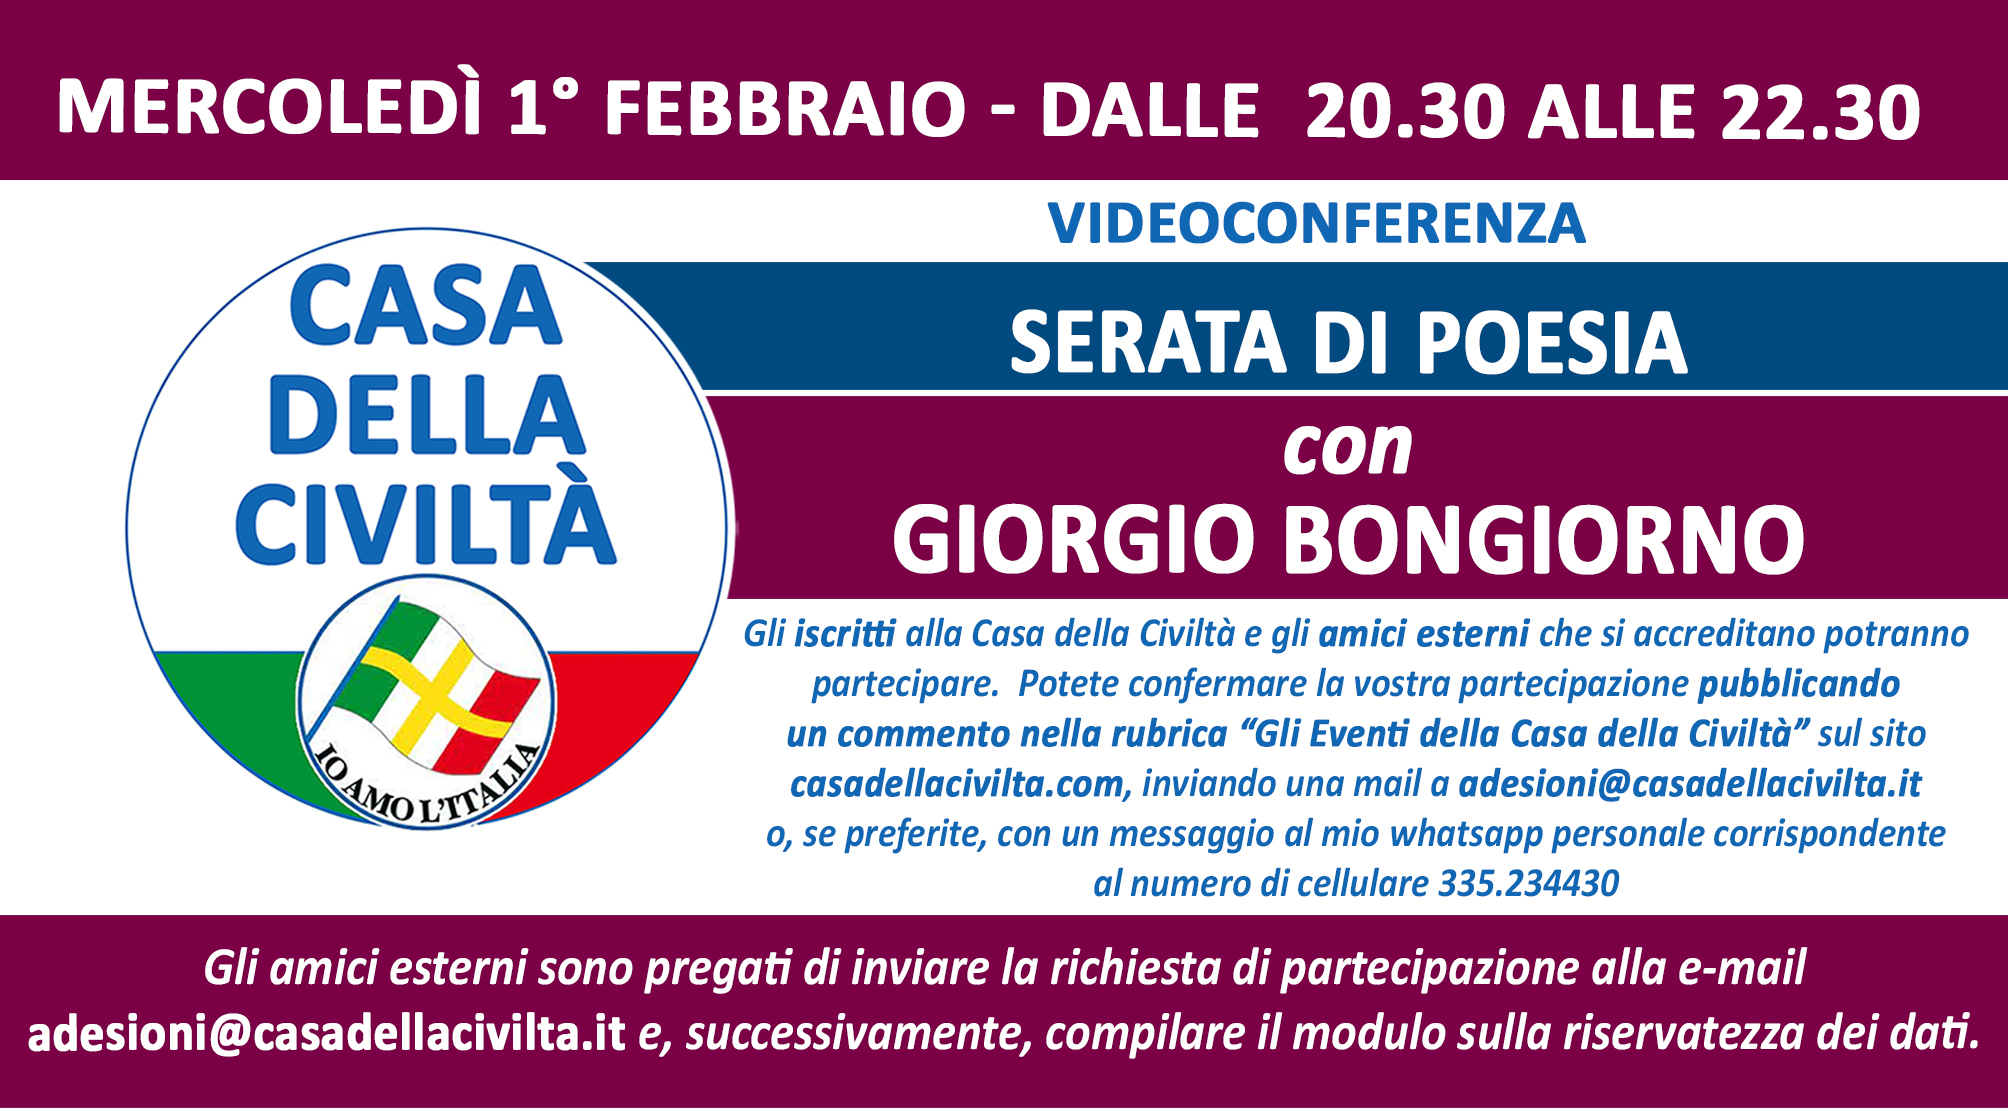 Serata di Poesia con Giorgio Bongiorno. Videoconferenza della Casa della Civiltà, mercoledì 1 febbraio, aperta a tutti